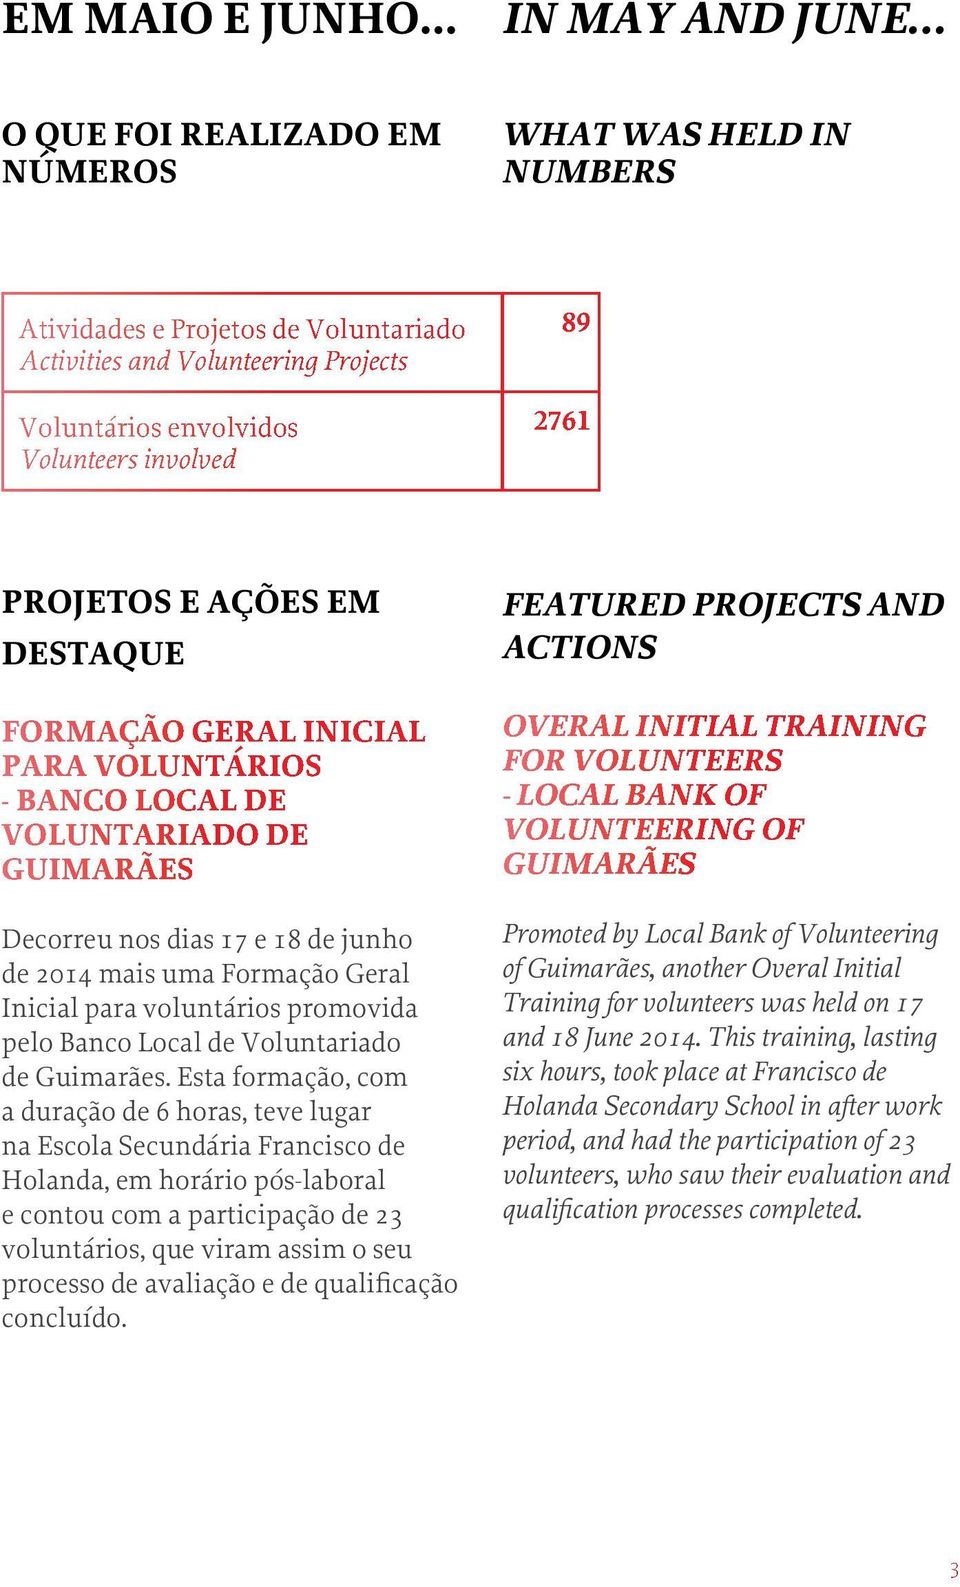 Inicial para voluntários promovida pelo Banco Local de Voluntariado de.